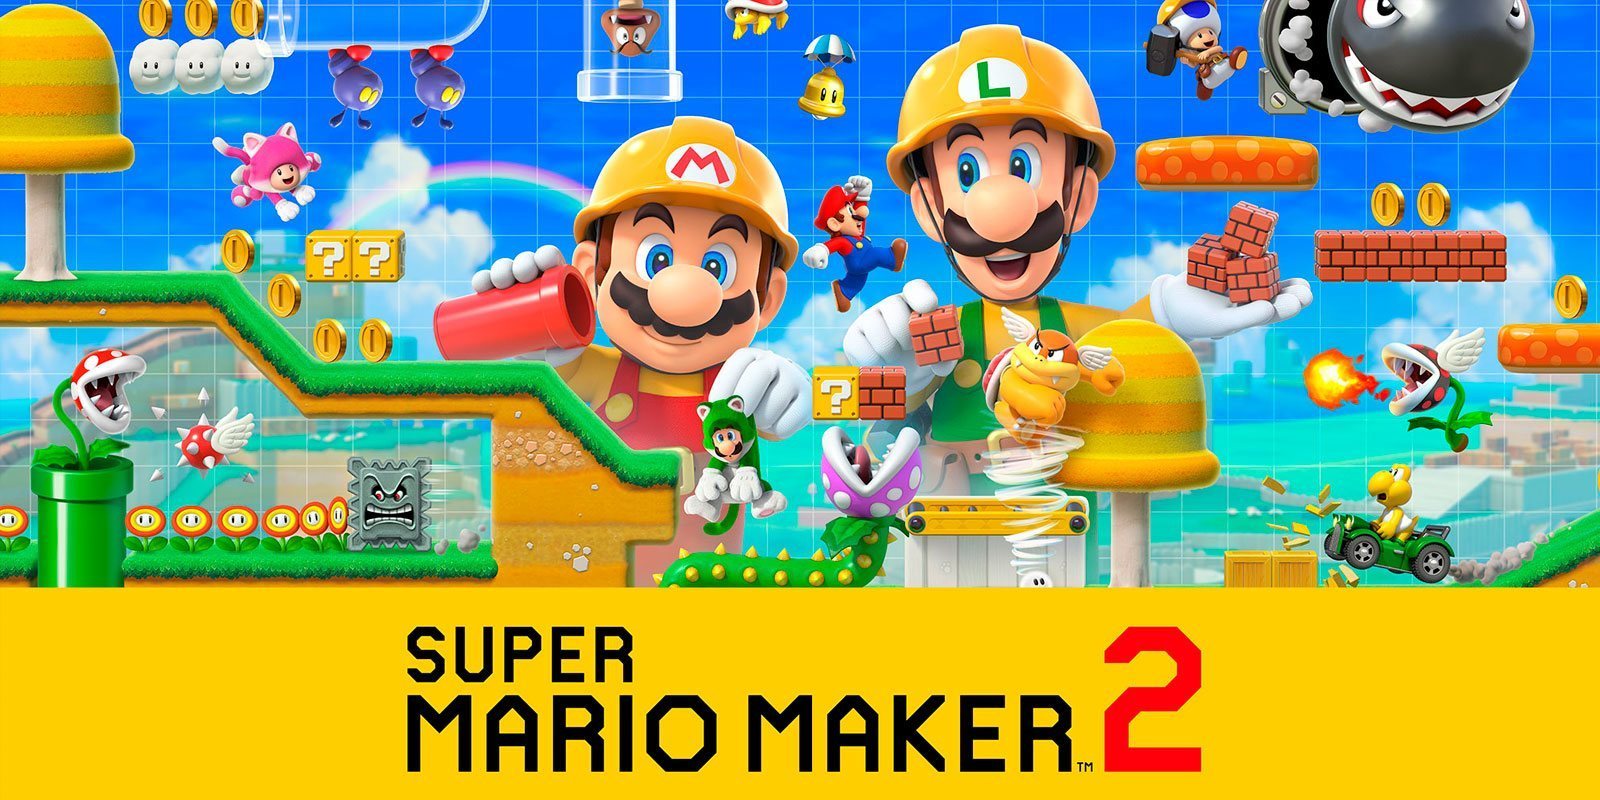 Usuarios se quejan del límite de niveles en 'Super Mario Maker 2'